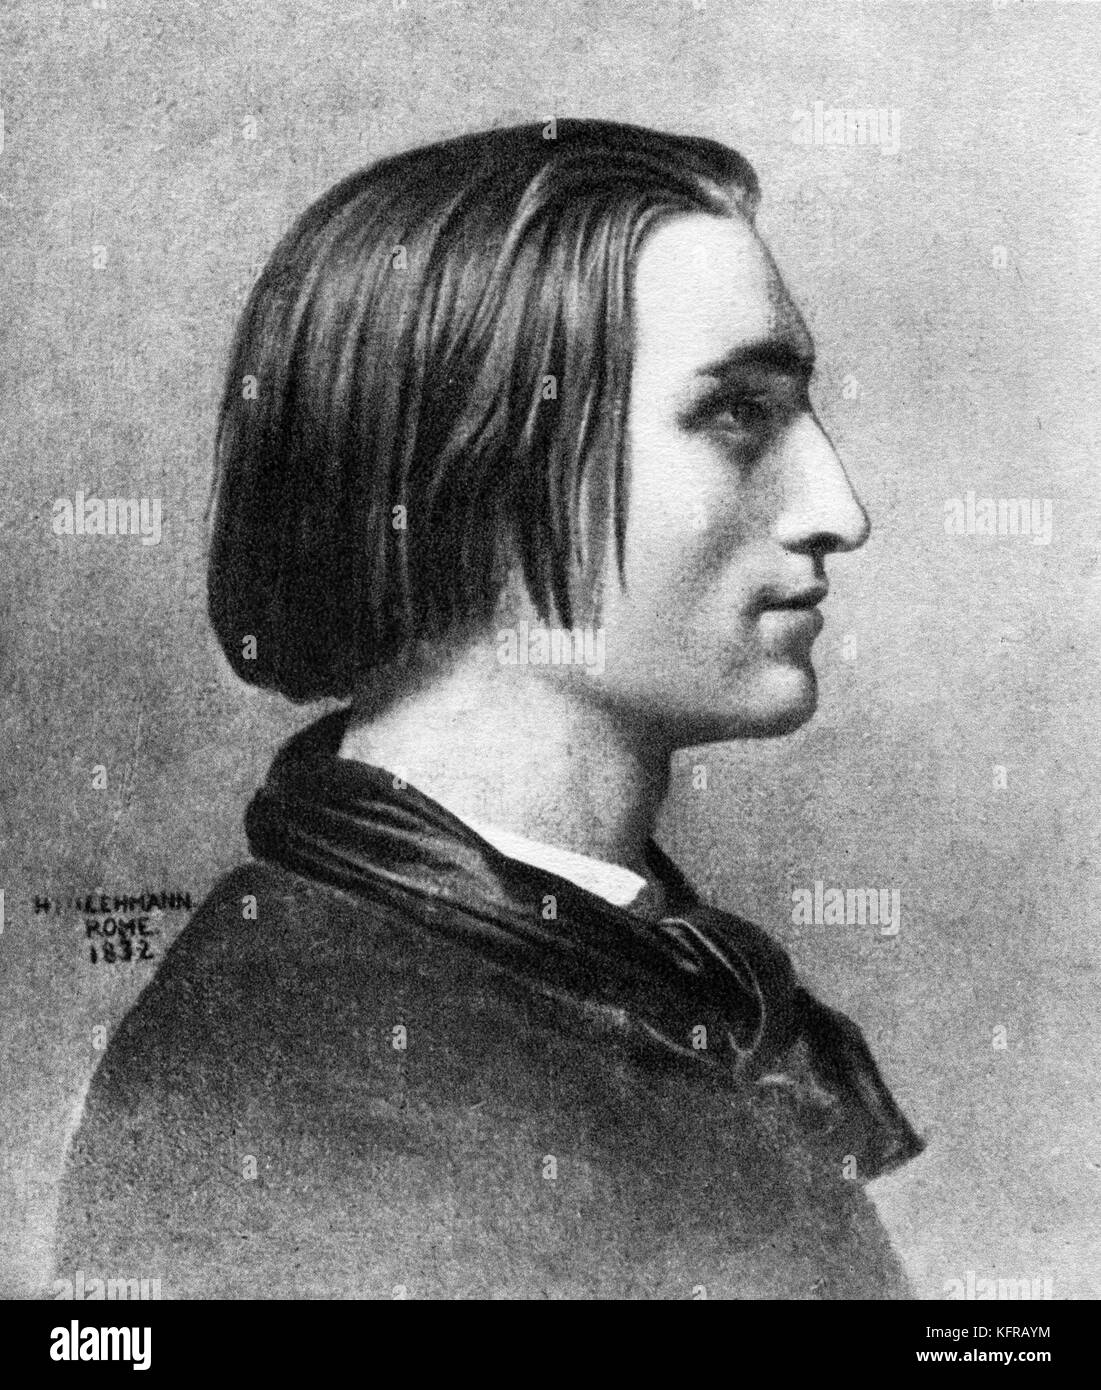 Franz Liszt - dopo aver ritratto da Henri Lehmann, c. 1839, Roma, Italia. Ungherese pianista e compositore, 22 Ottobre 1811 - 31 luglio 1886. Foto Stock